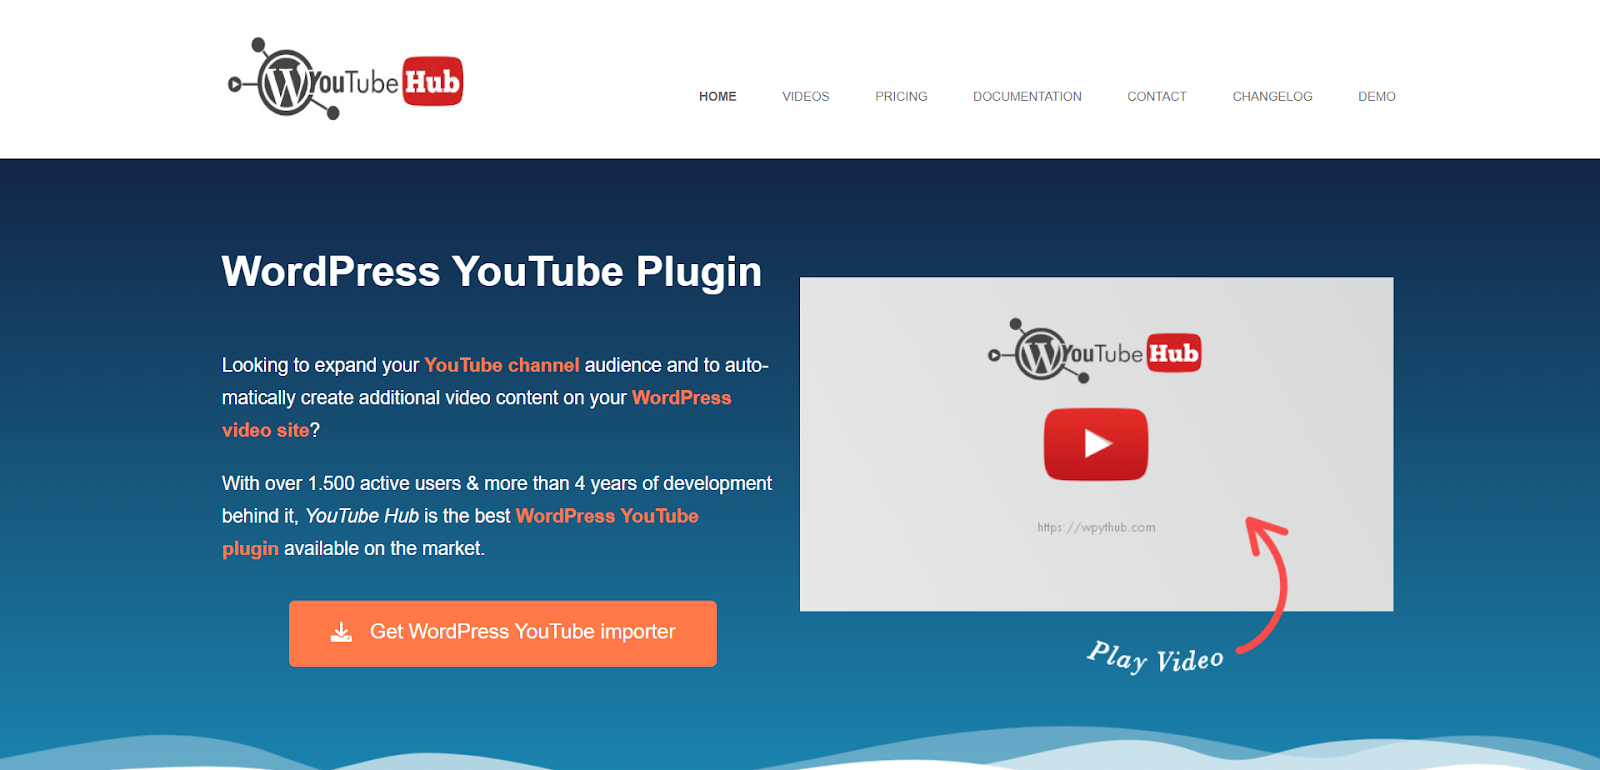 WP YouTube Hub plugin